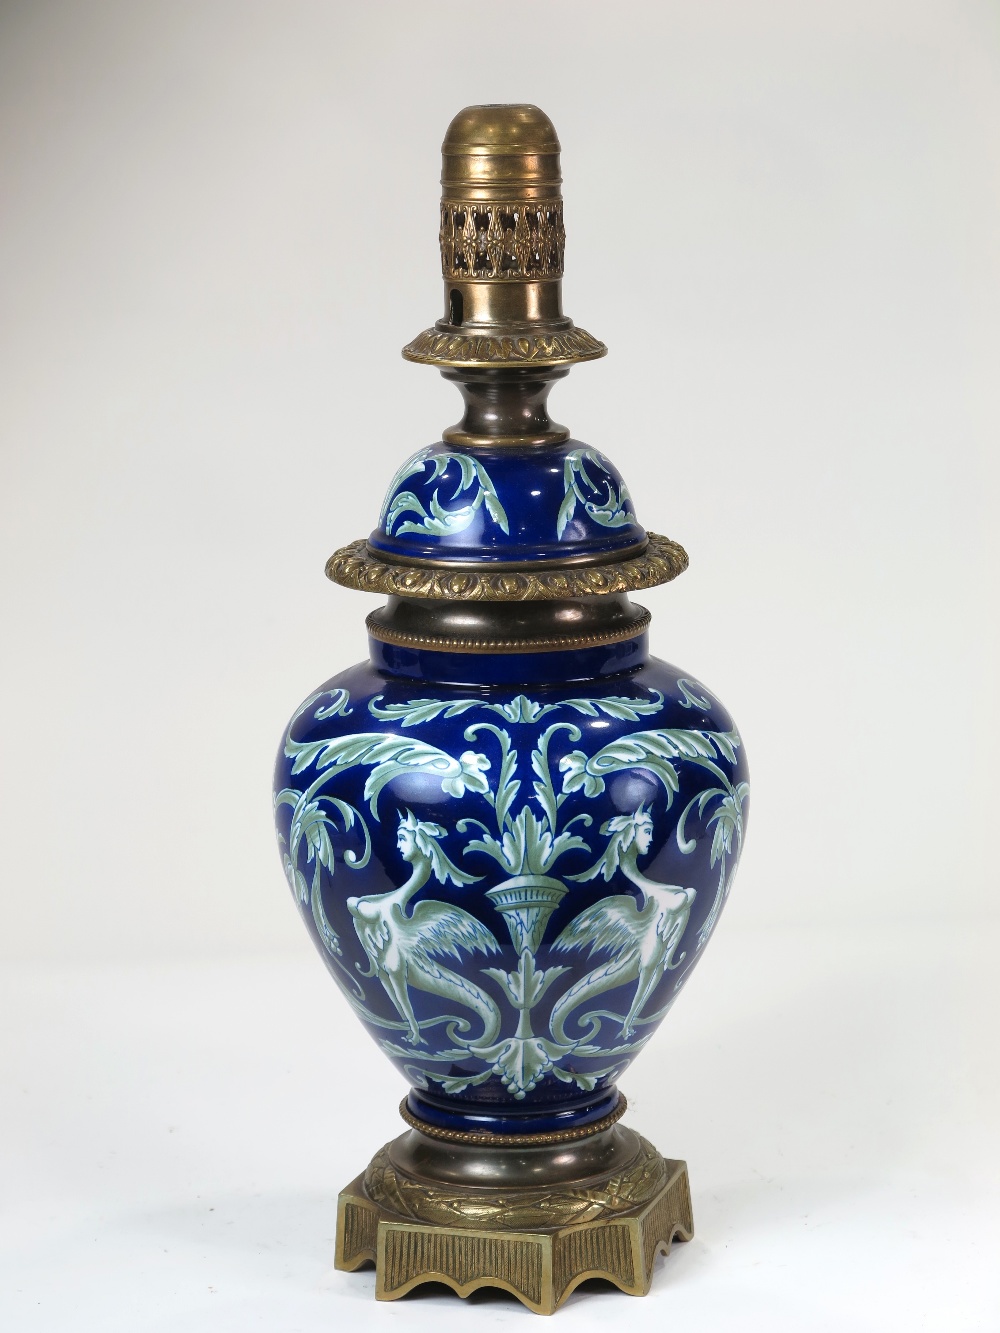 Quinqué francés de loza azul y blanca y bronce, Napoleón III, S.XIX
55 cm
150 - 200 €